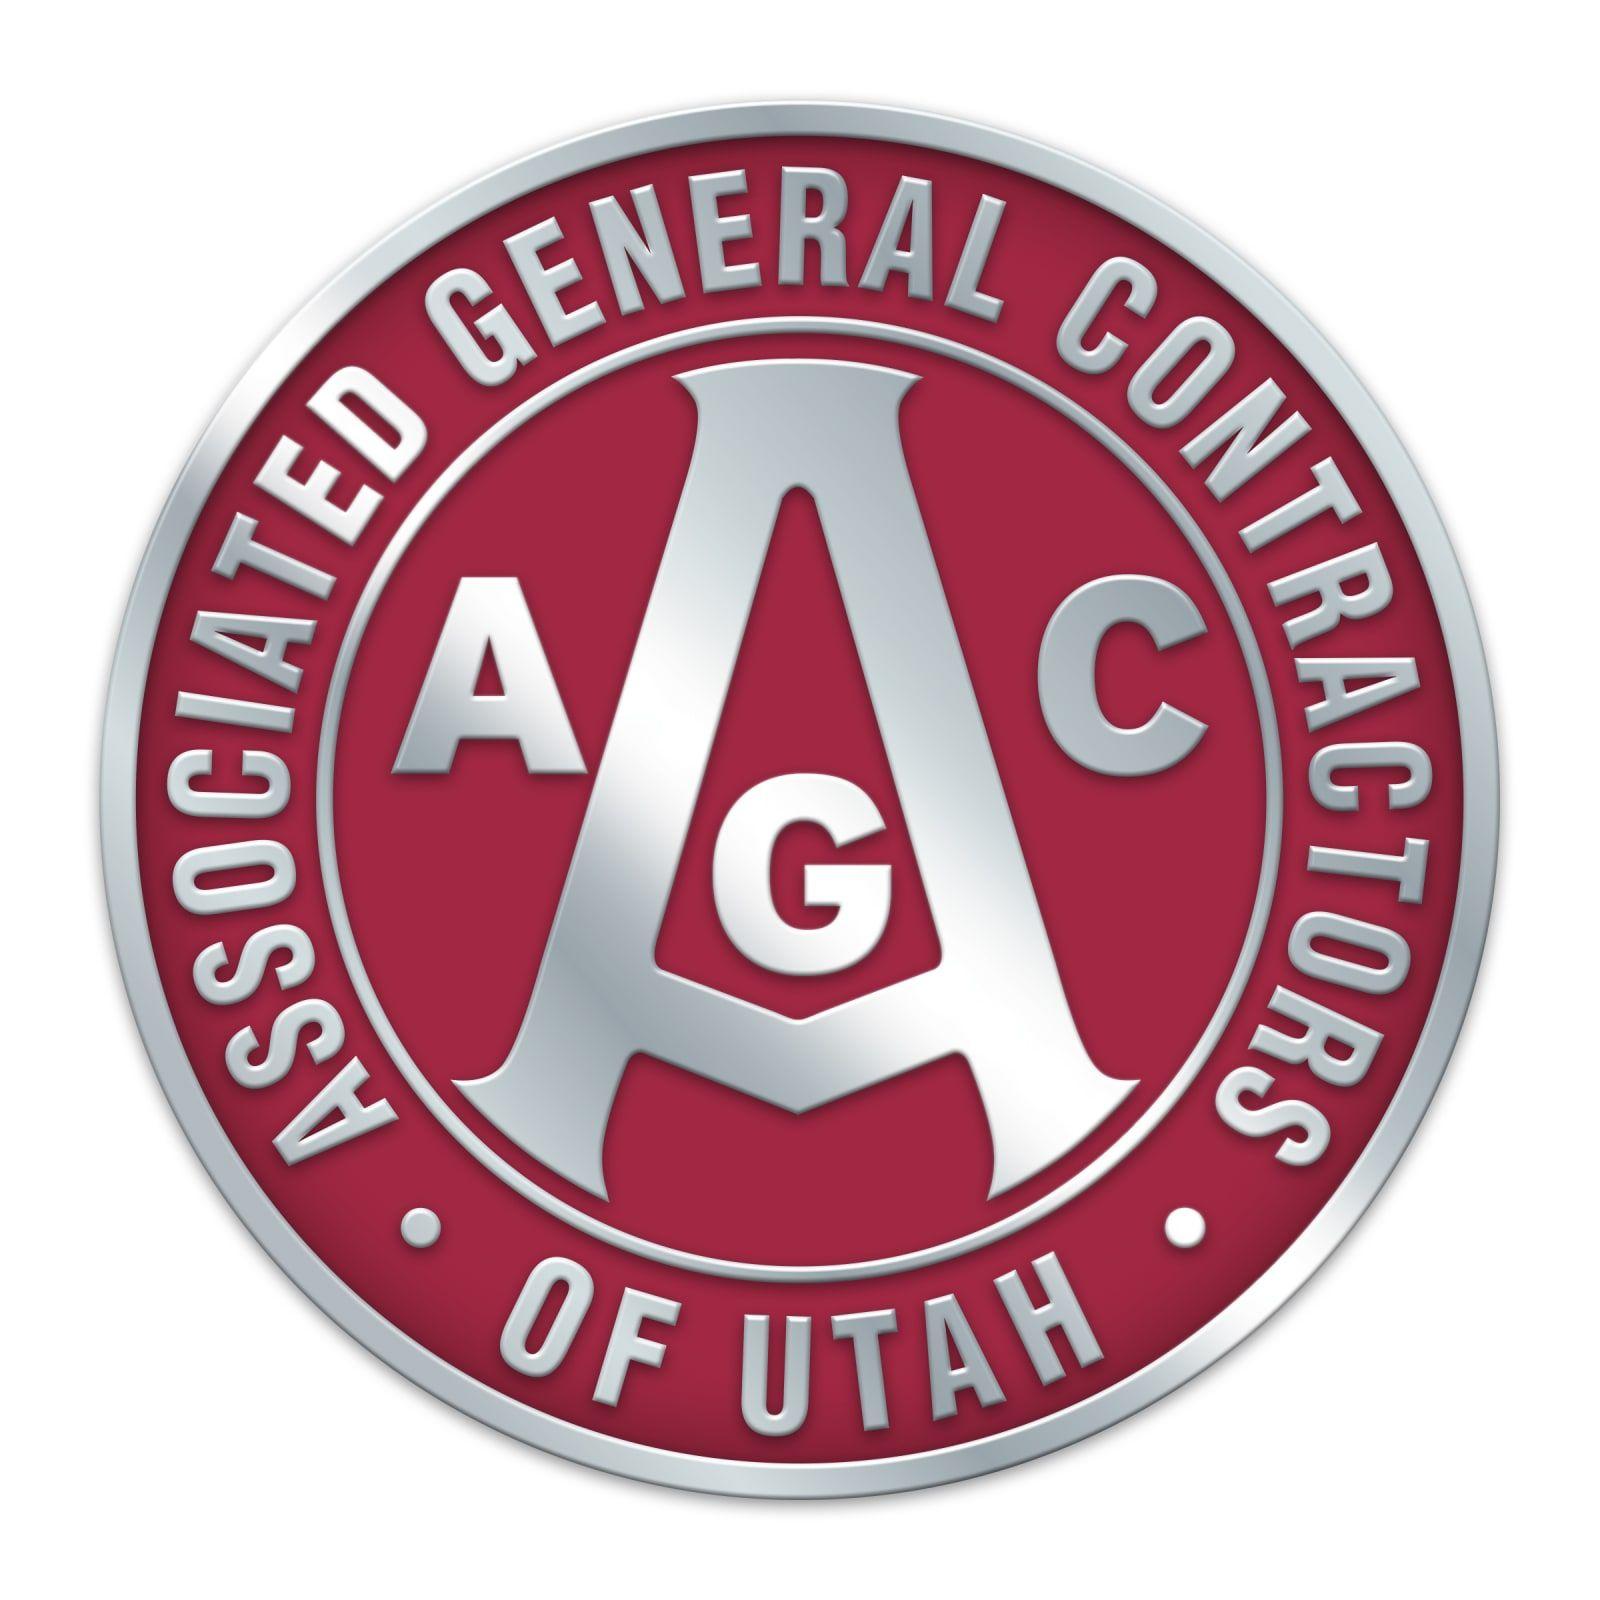 Utah Logo - Home - Associated General Contractors of Utah, UTAH